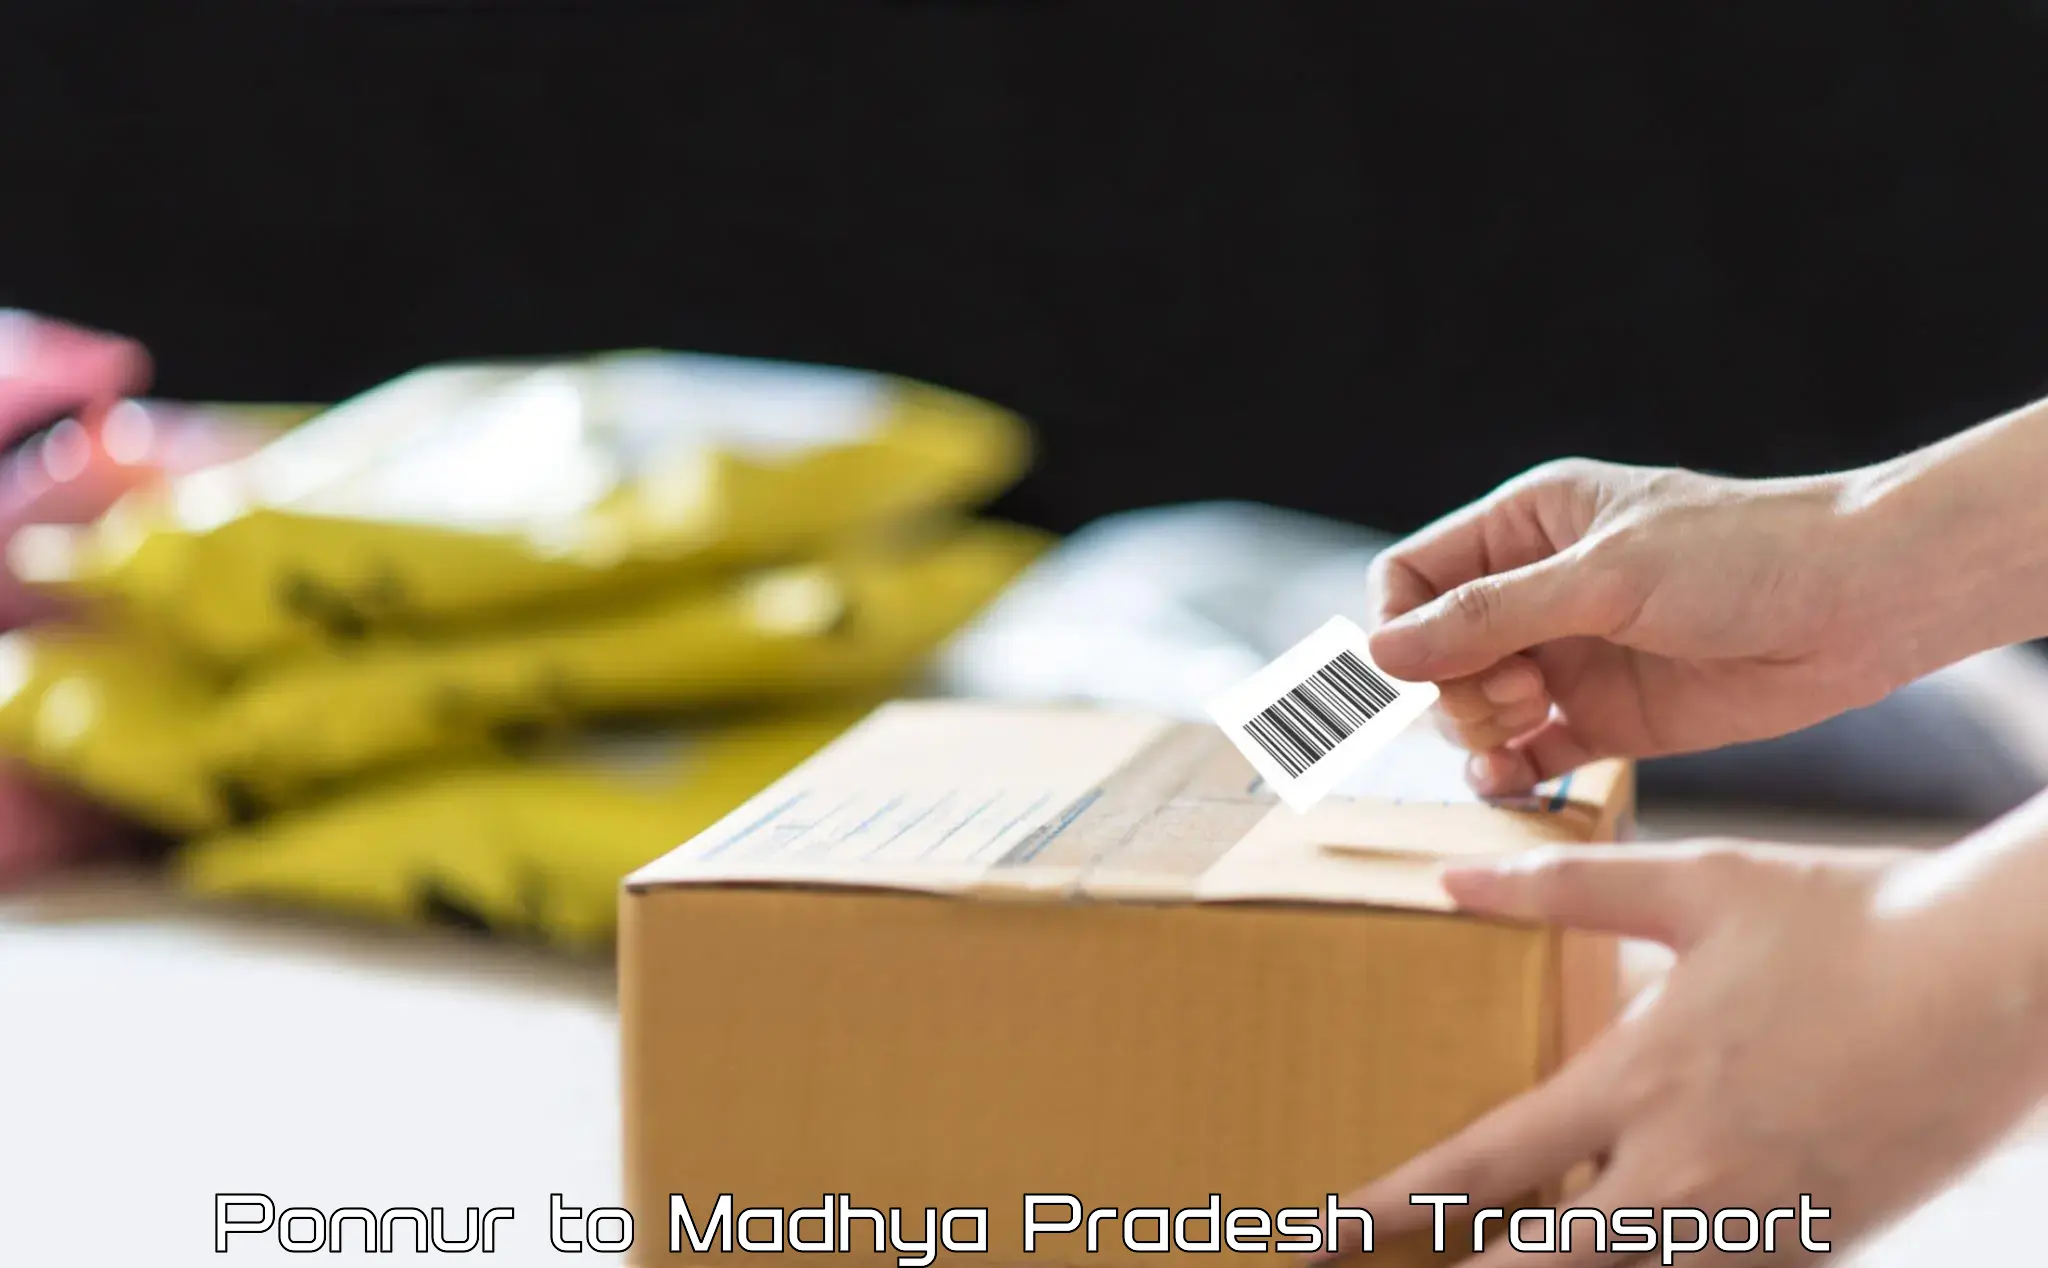 Online transport service Ponnur to Begumganj